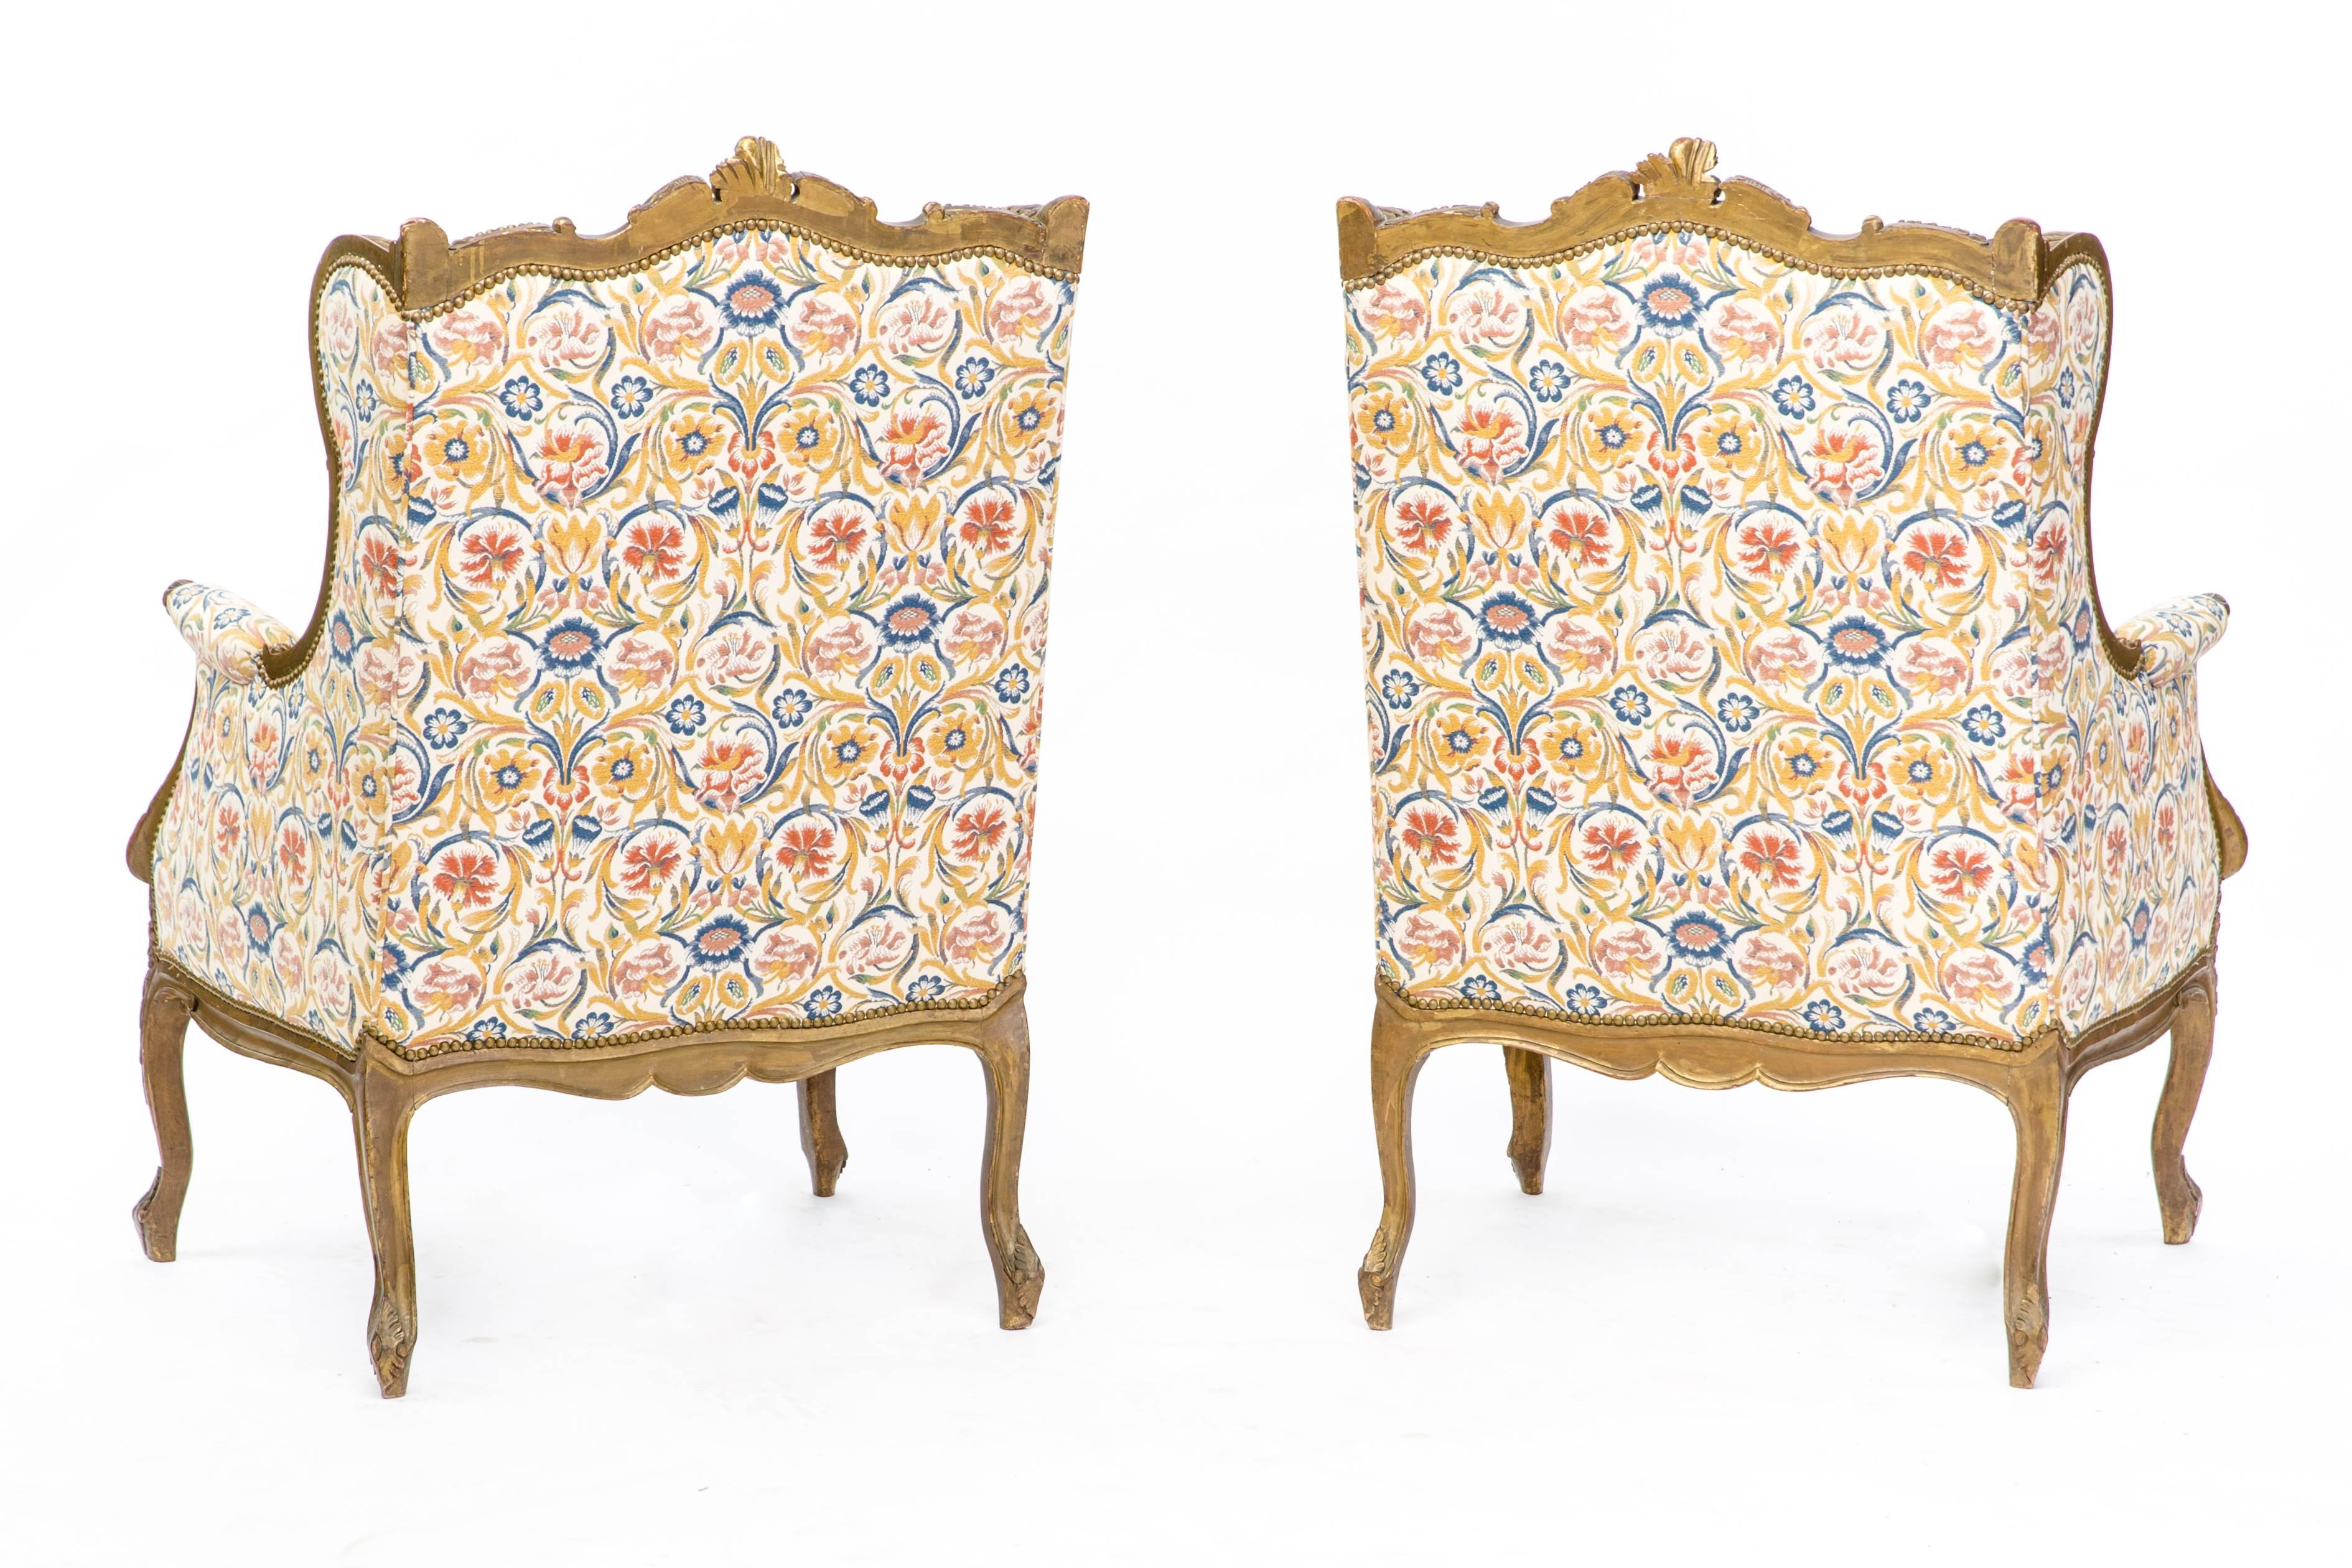 Une superbe paire de fauteuils français de style Louis XV du 19ème siècle, tapissés d'un luxueux motif floral, vers 1870. Cette pièce est fabriquée en noyer fortement sculpté avec une finition dorée. Les deux articles sont en excellent état.